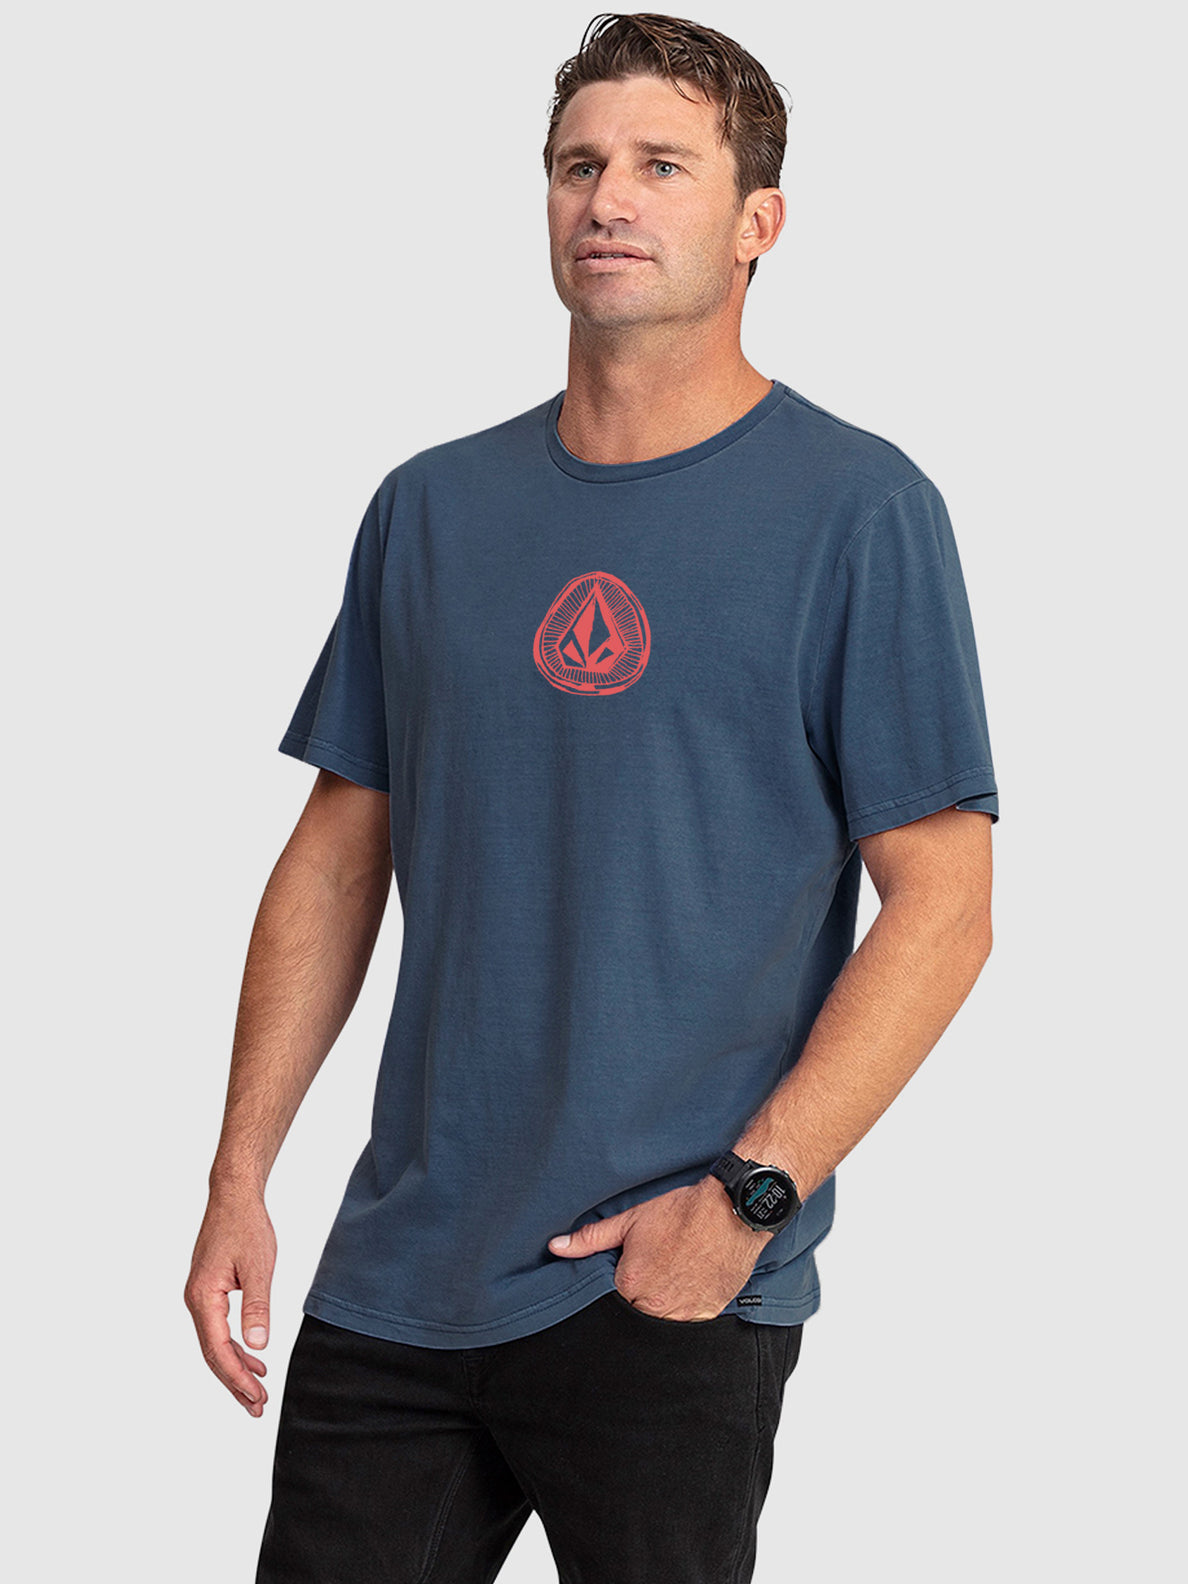 Substone Short Sleeve T-Shirt - Aged Indigo